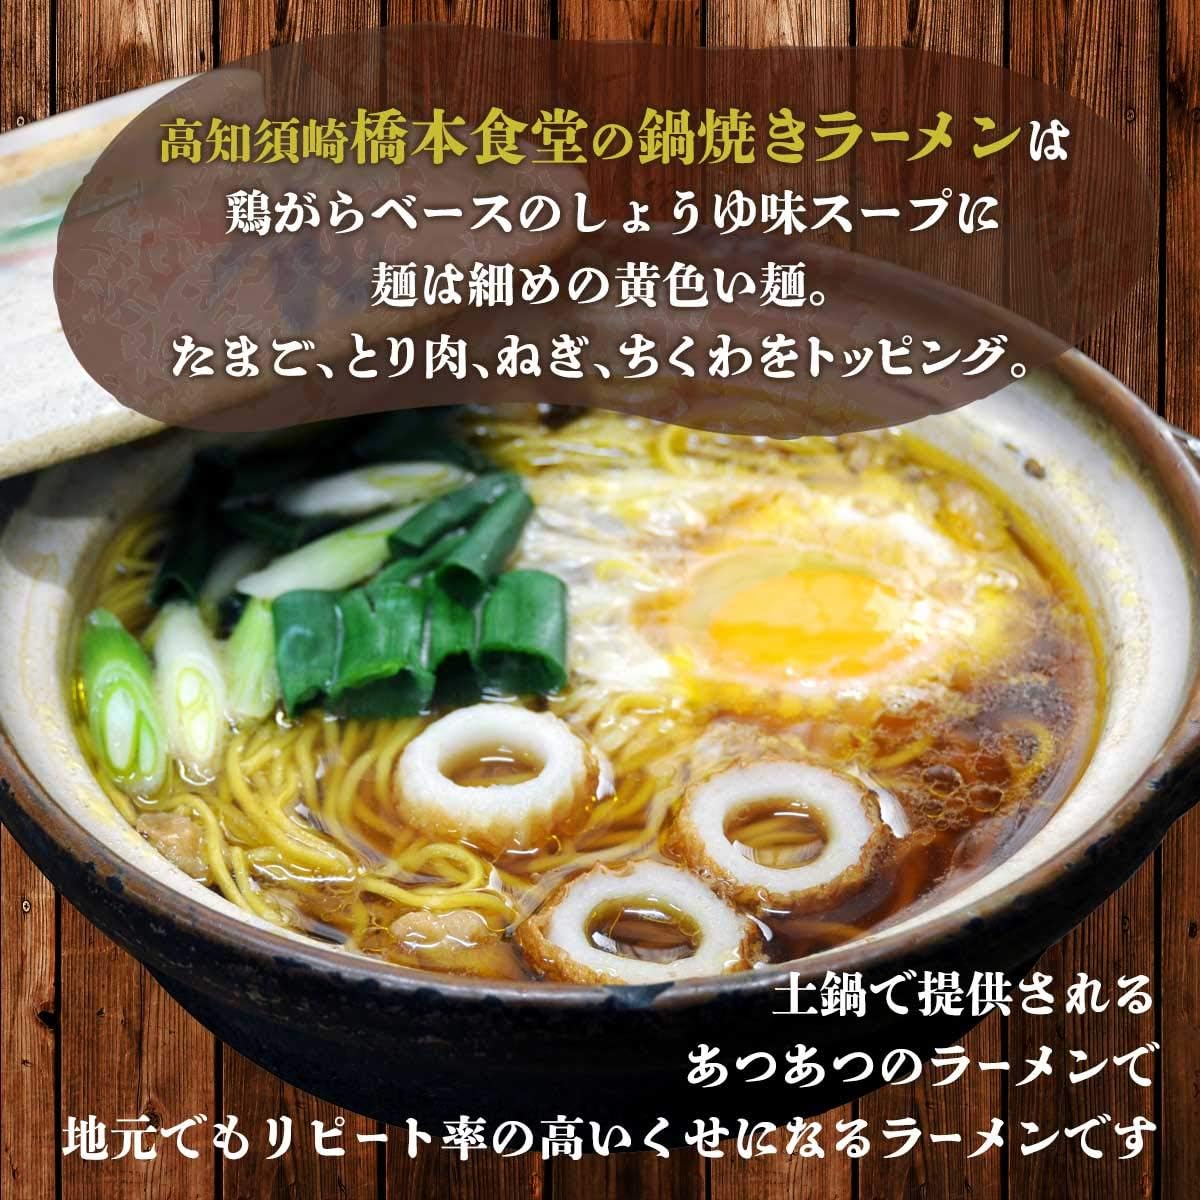 高知県 鍋焼きラーメン 橋本食堂 鶏ガラ醤油味